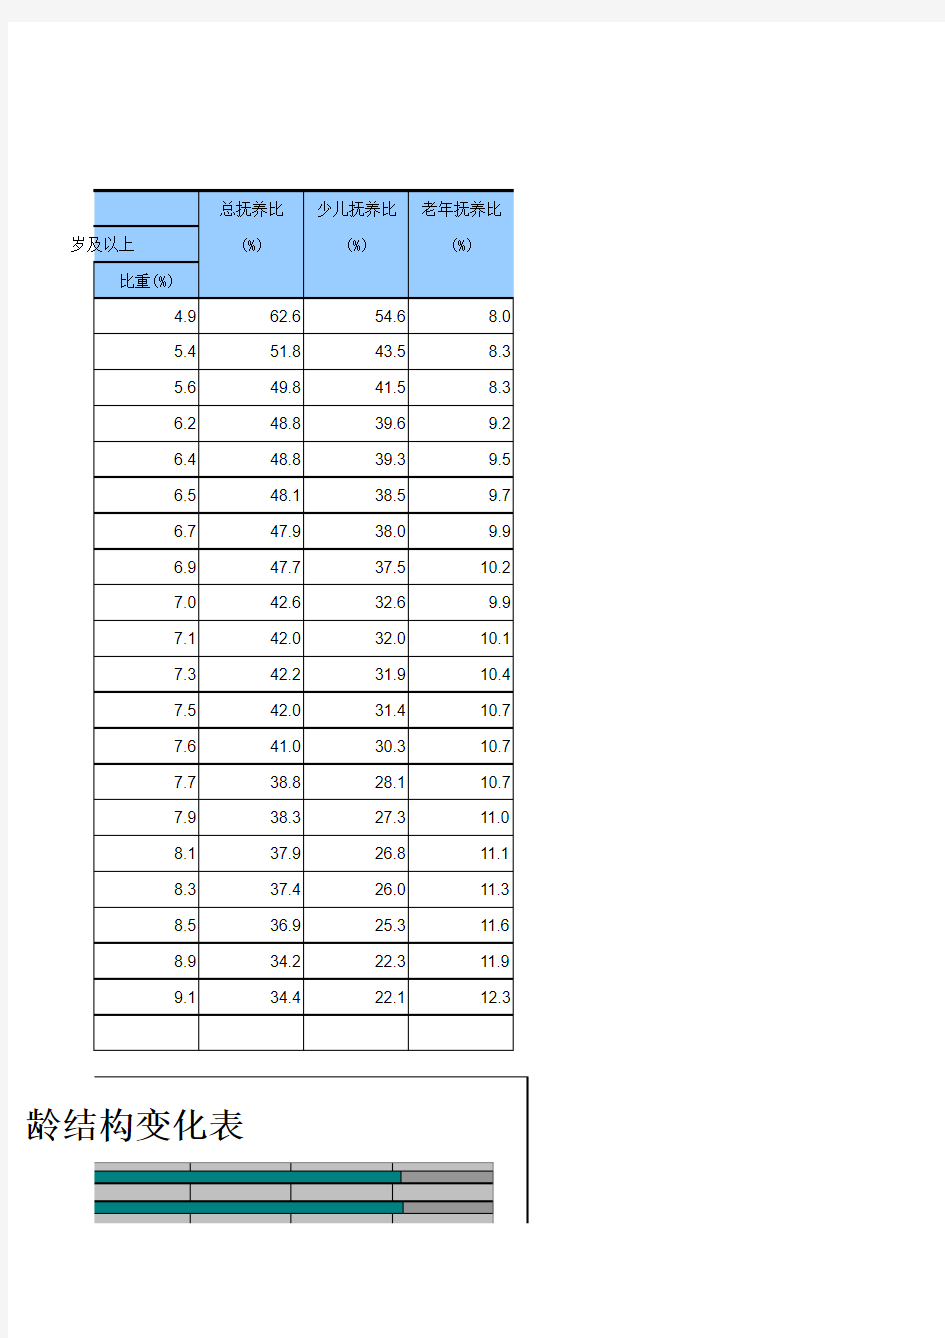 1982至2011年中国人口结构变化数据图表